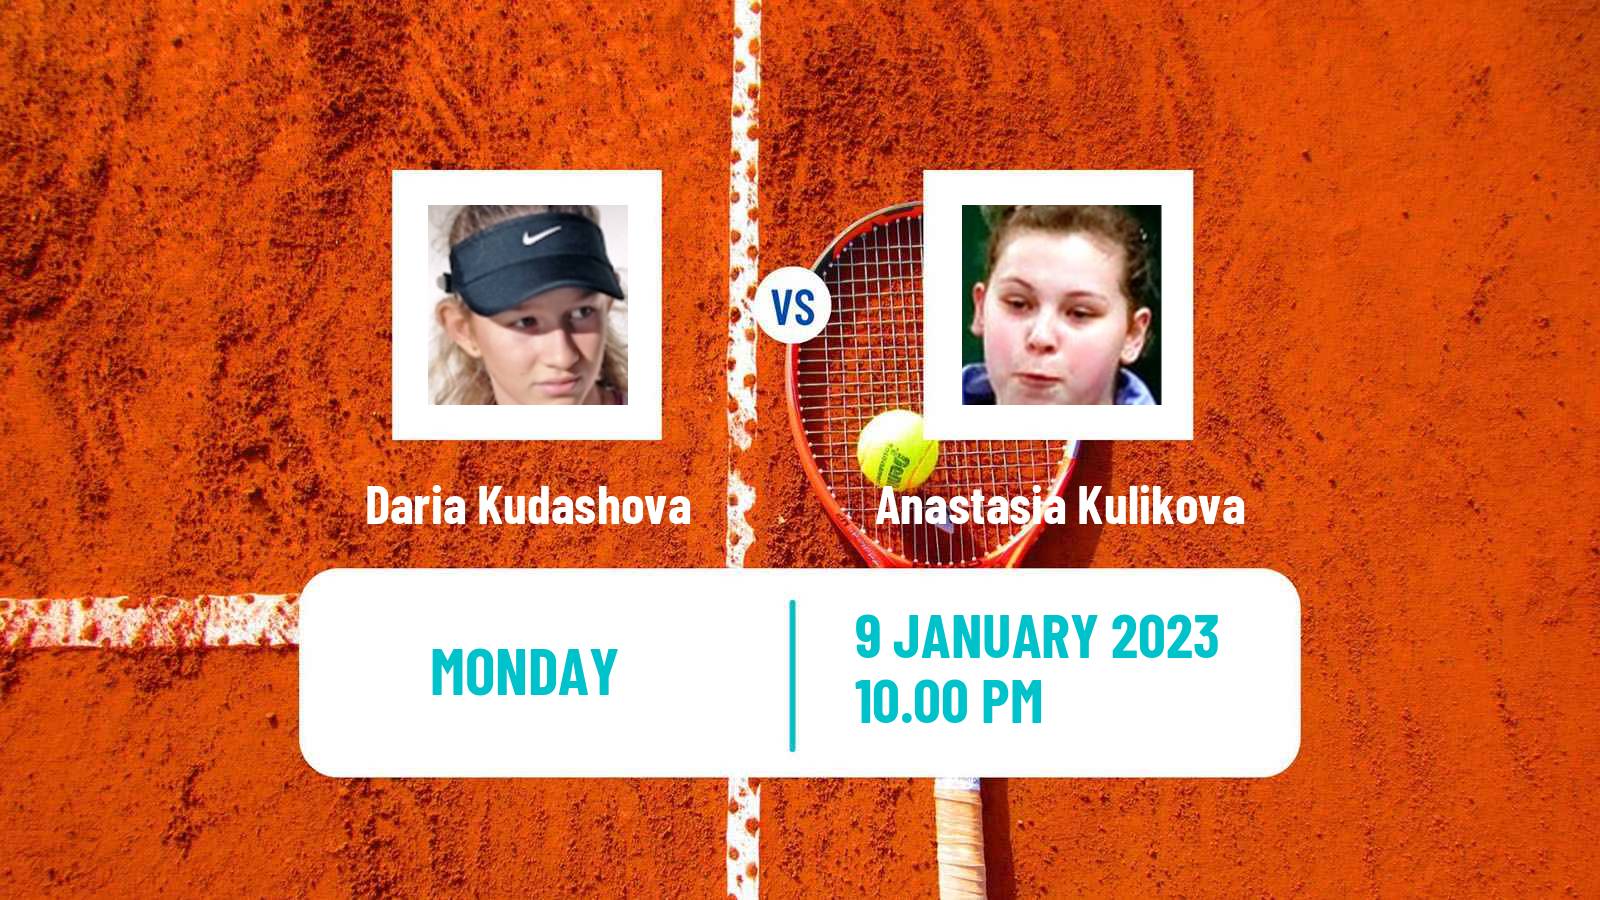 Tennis ITF Tournaments Daria Kudashova - Anastasia Kulikova